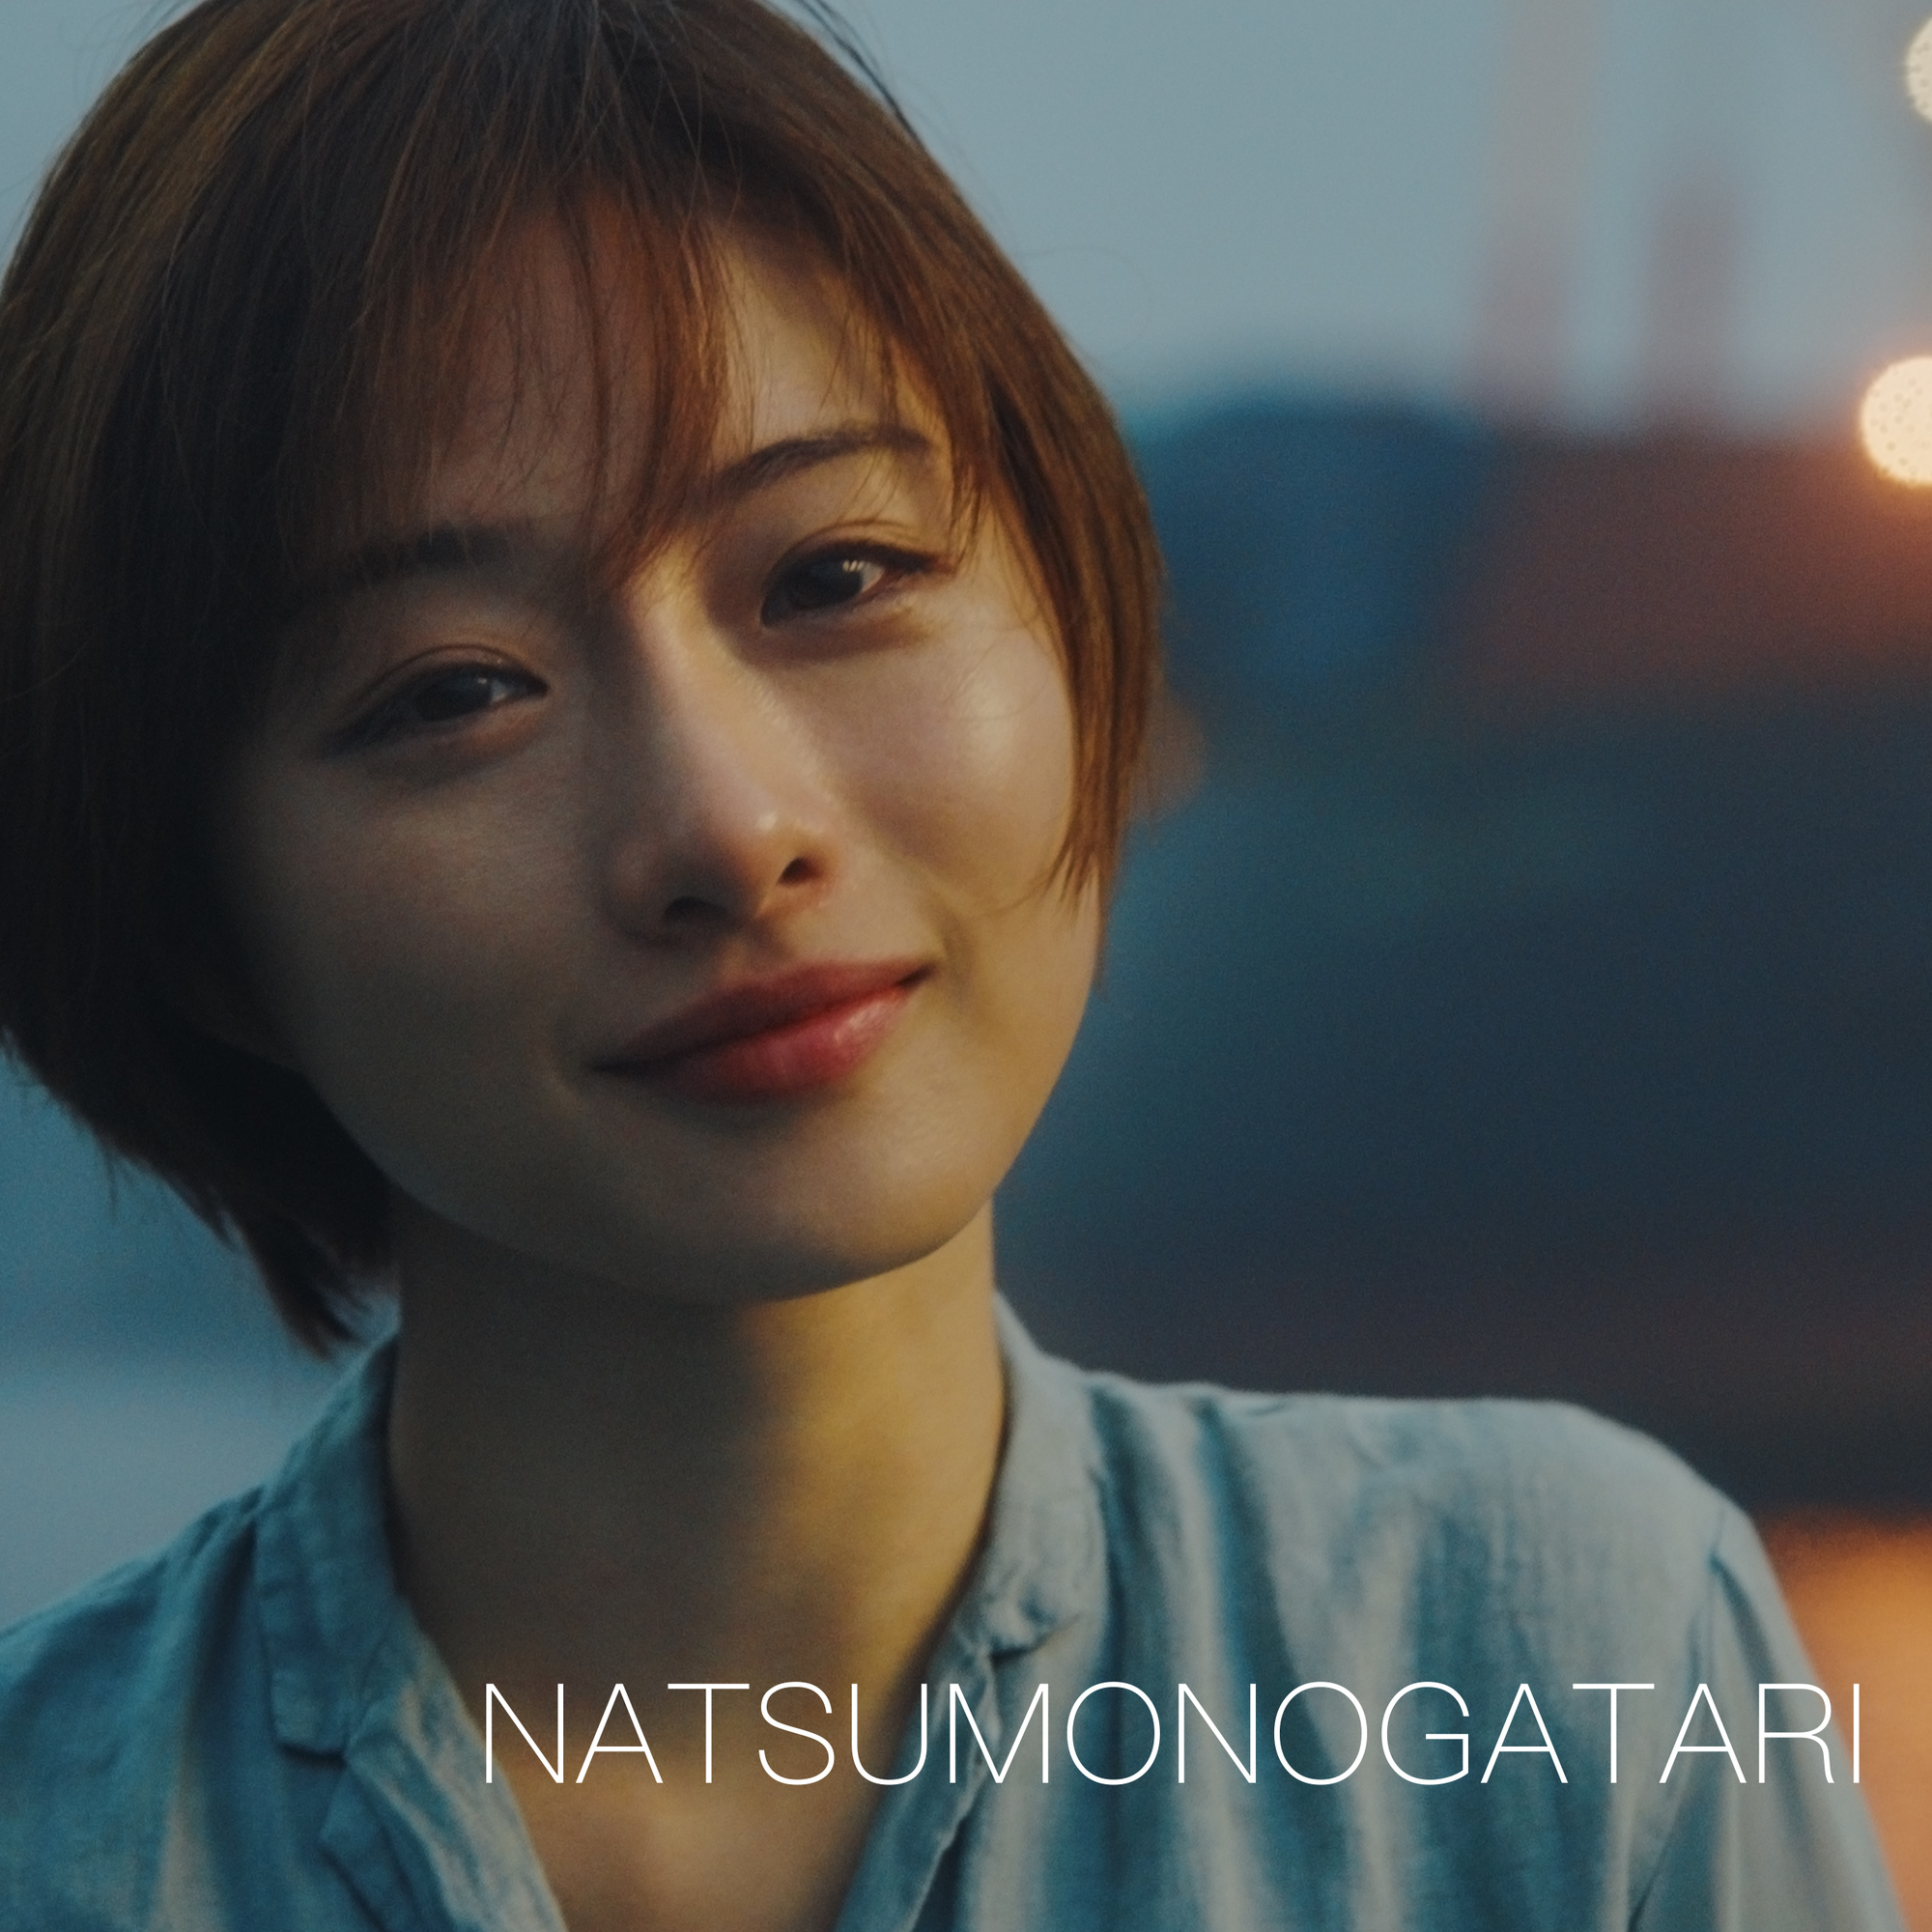 新曲 Natsumonogatari ジャケット写真に 女優 石原さとみが約17年ぶりに登場 フェリー上で石原が佇む楽曲visualizerもyoutube公開 ゆずオフィシャルサイト